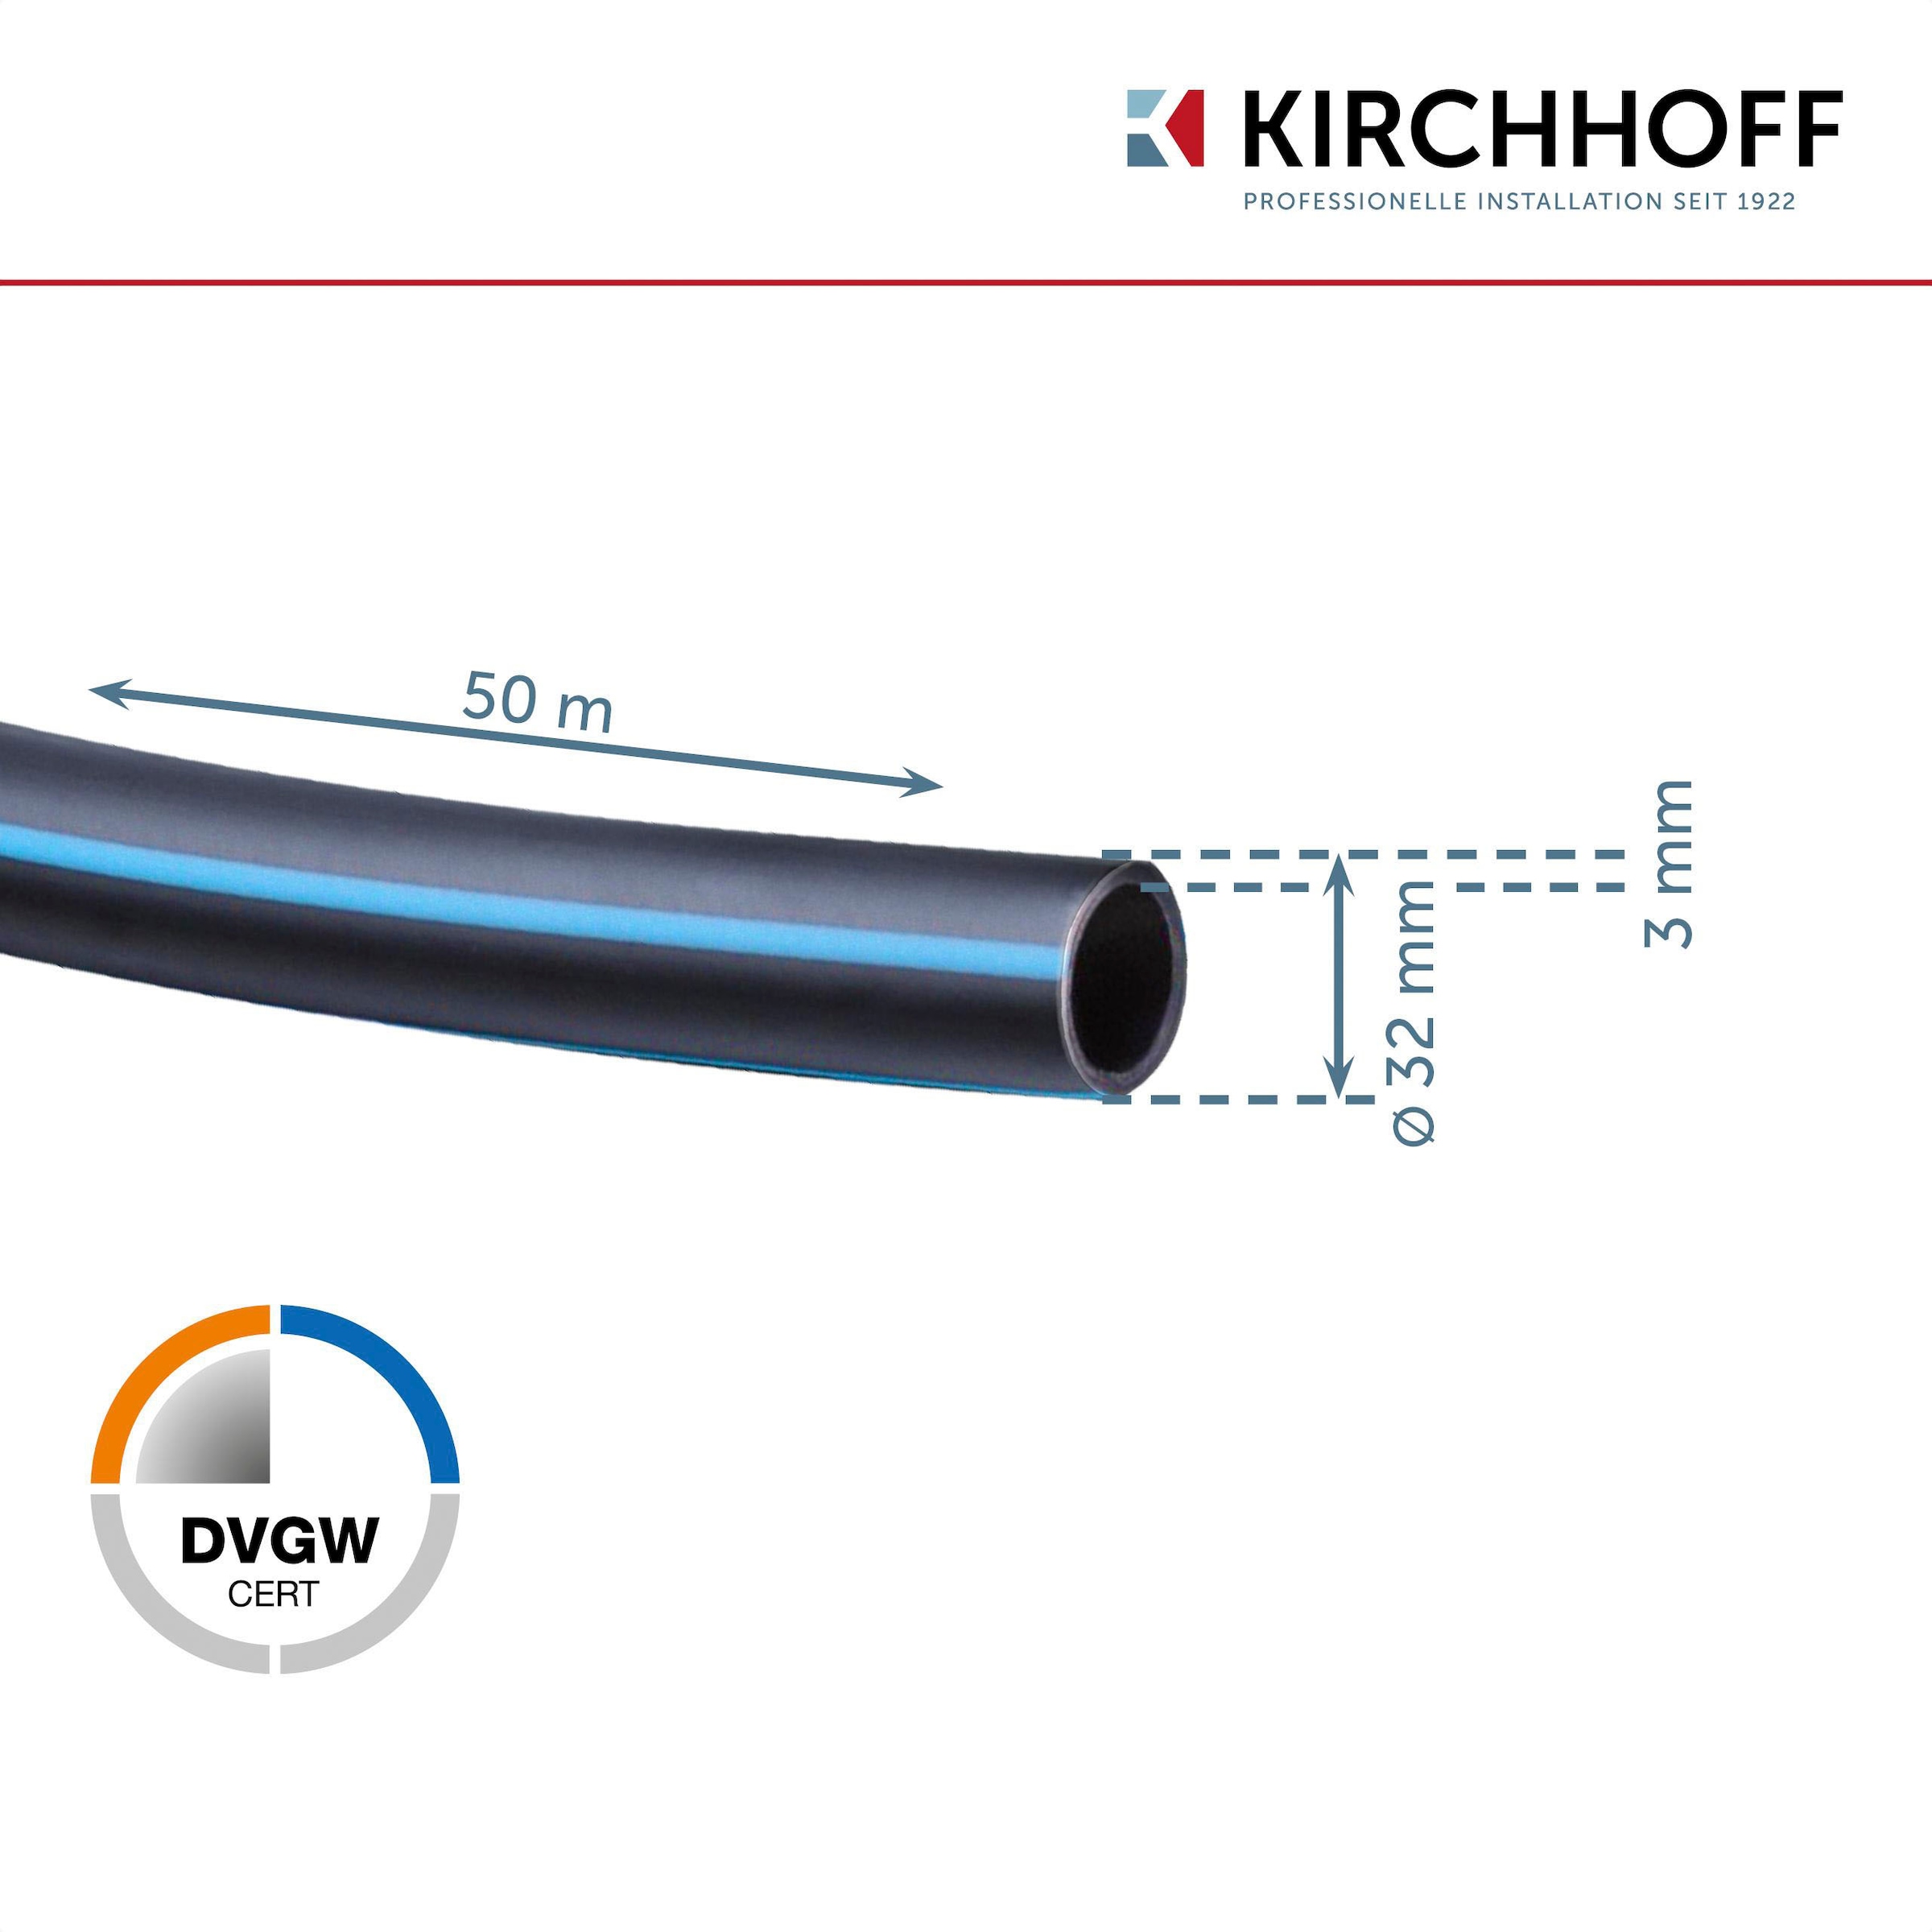 Kirchhoff Bewässerungsschlauch, Wasserleitung Gartenbewässerung 32 mm x 50 m